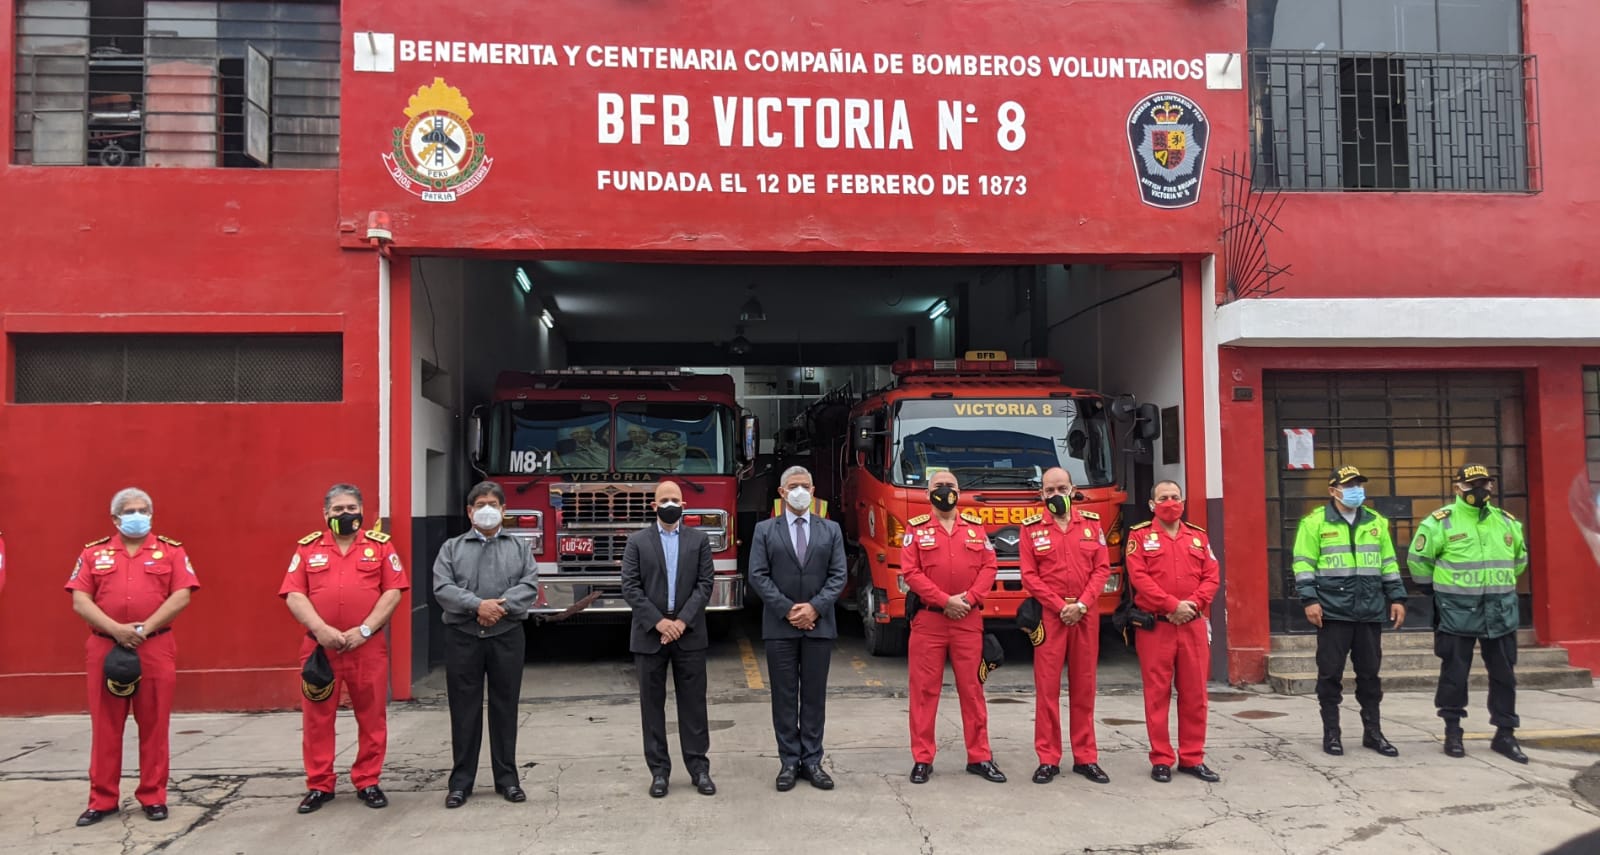 criscesarcollantes wrote: El. Casco me pertenece soy bombero voluntario de  la compañía de bomberos lima 4 en Lima Perú. One sharp looking…